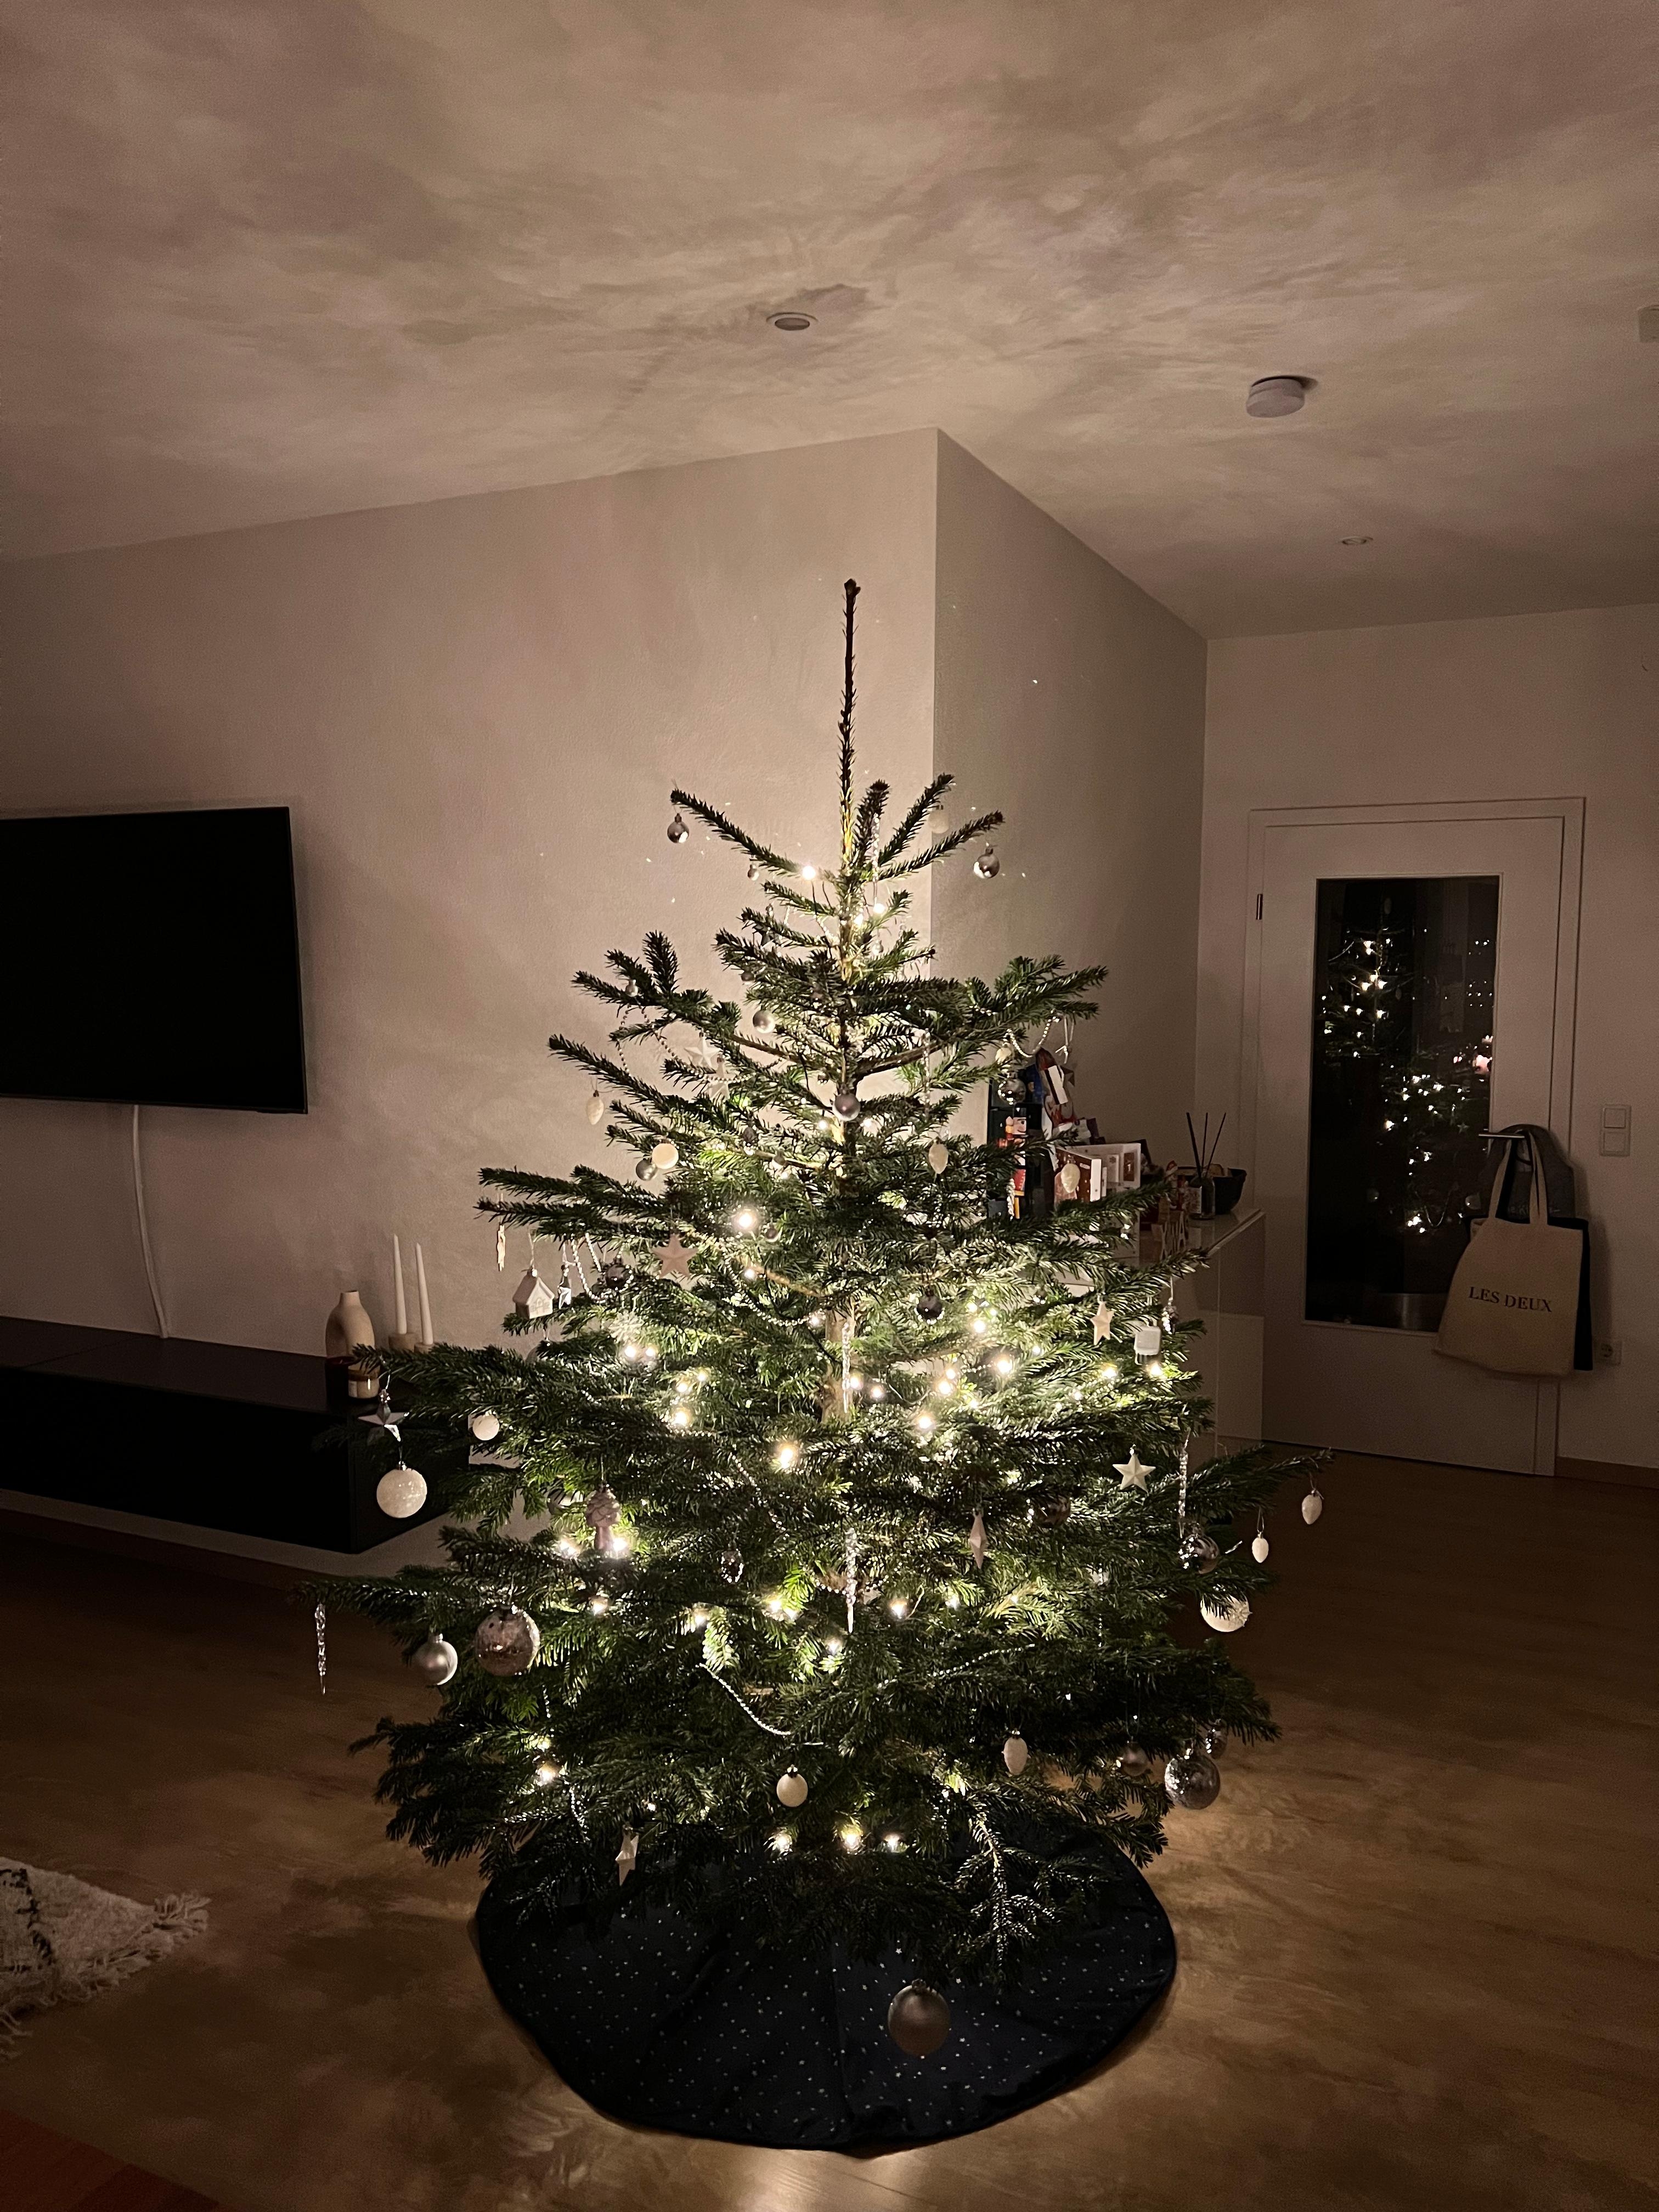 Mein erster eigener Weihnachtsbaum 🎄 #christbaum #weihnachten #deko